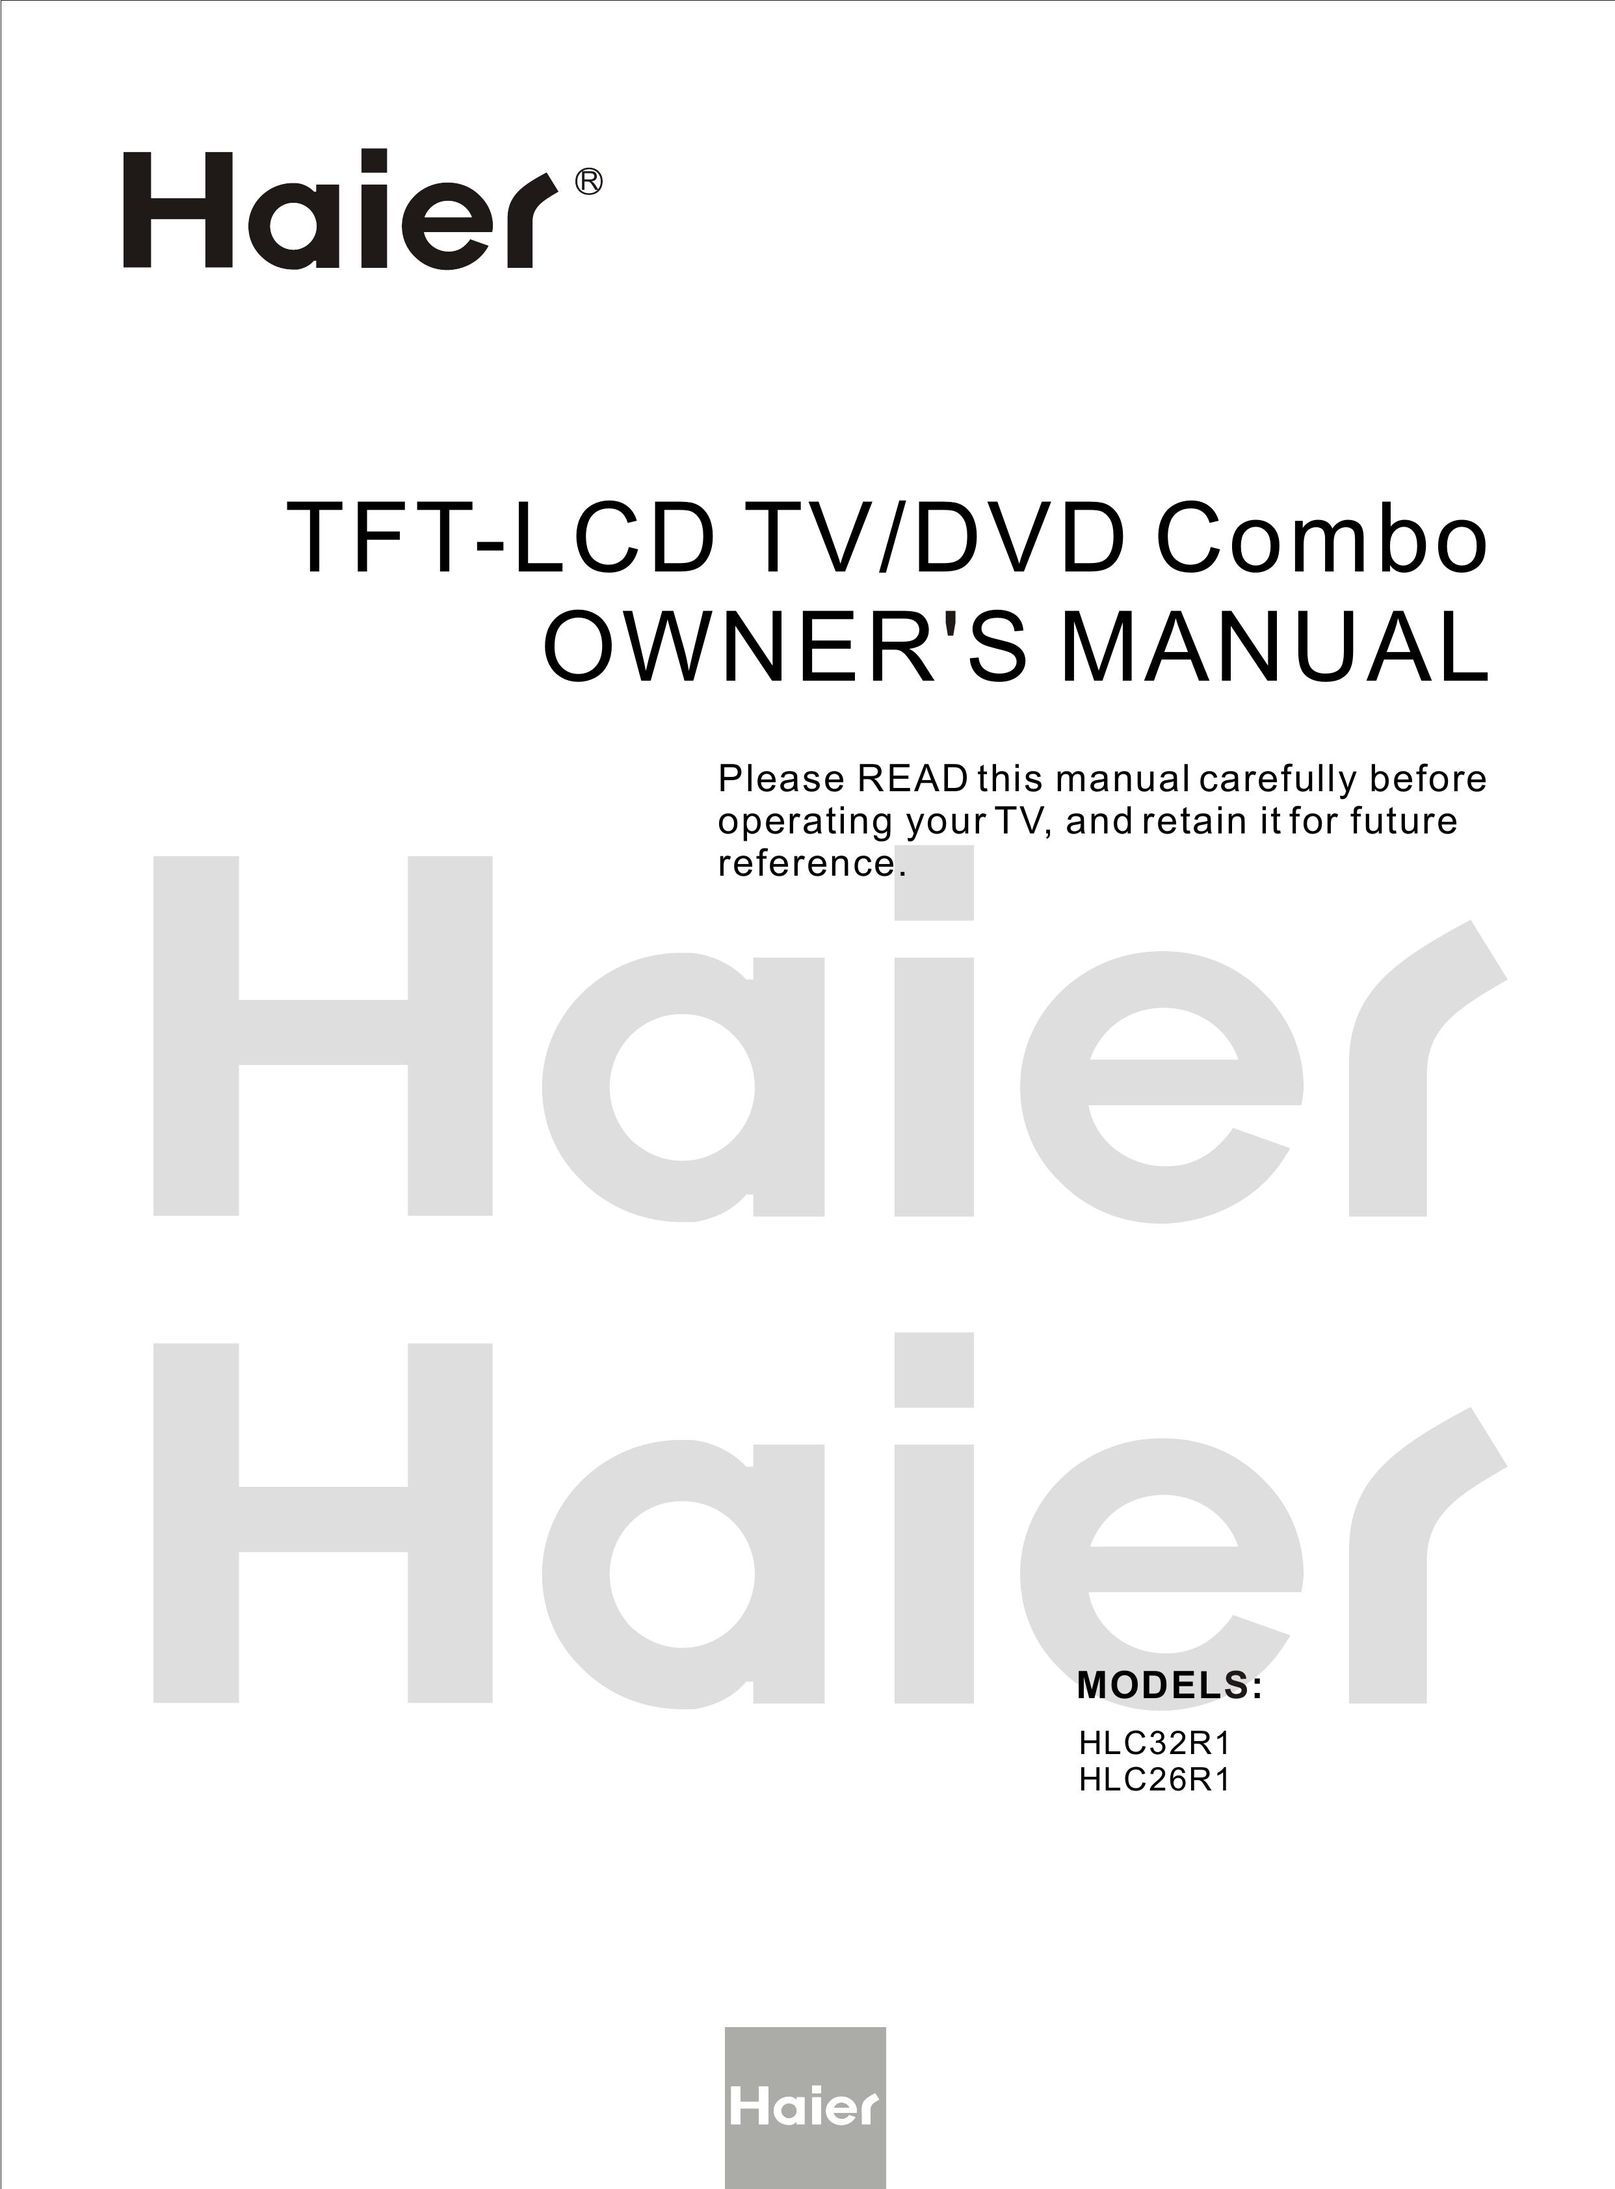 Haier HLC32R1 TV DVD Combo User Manual